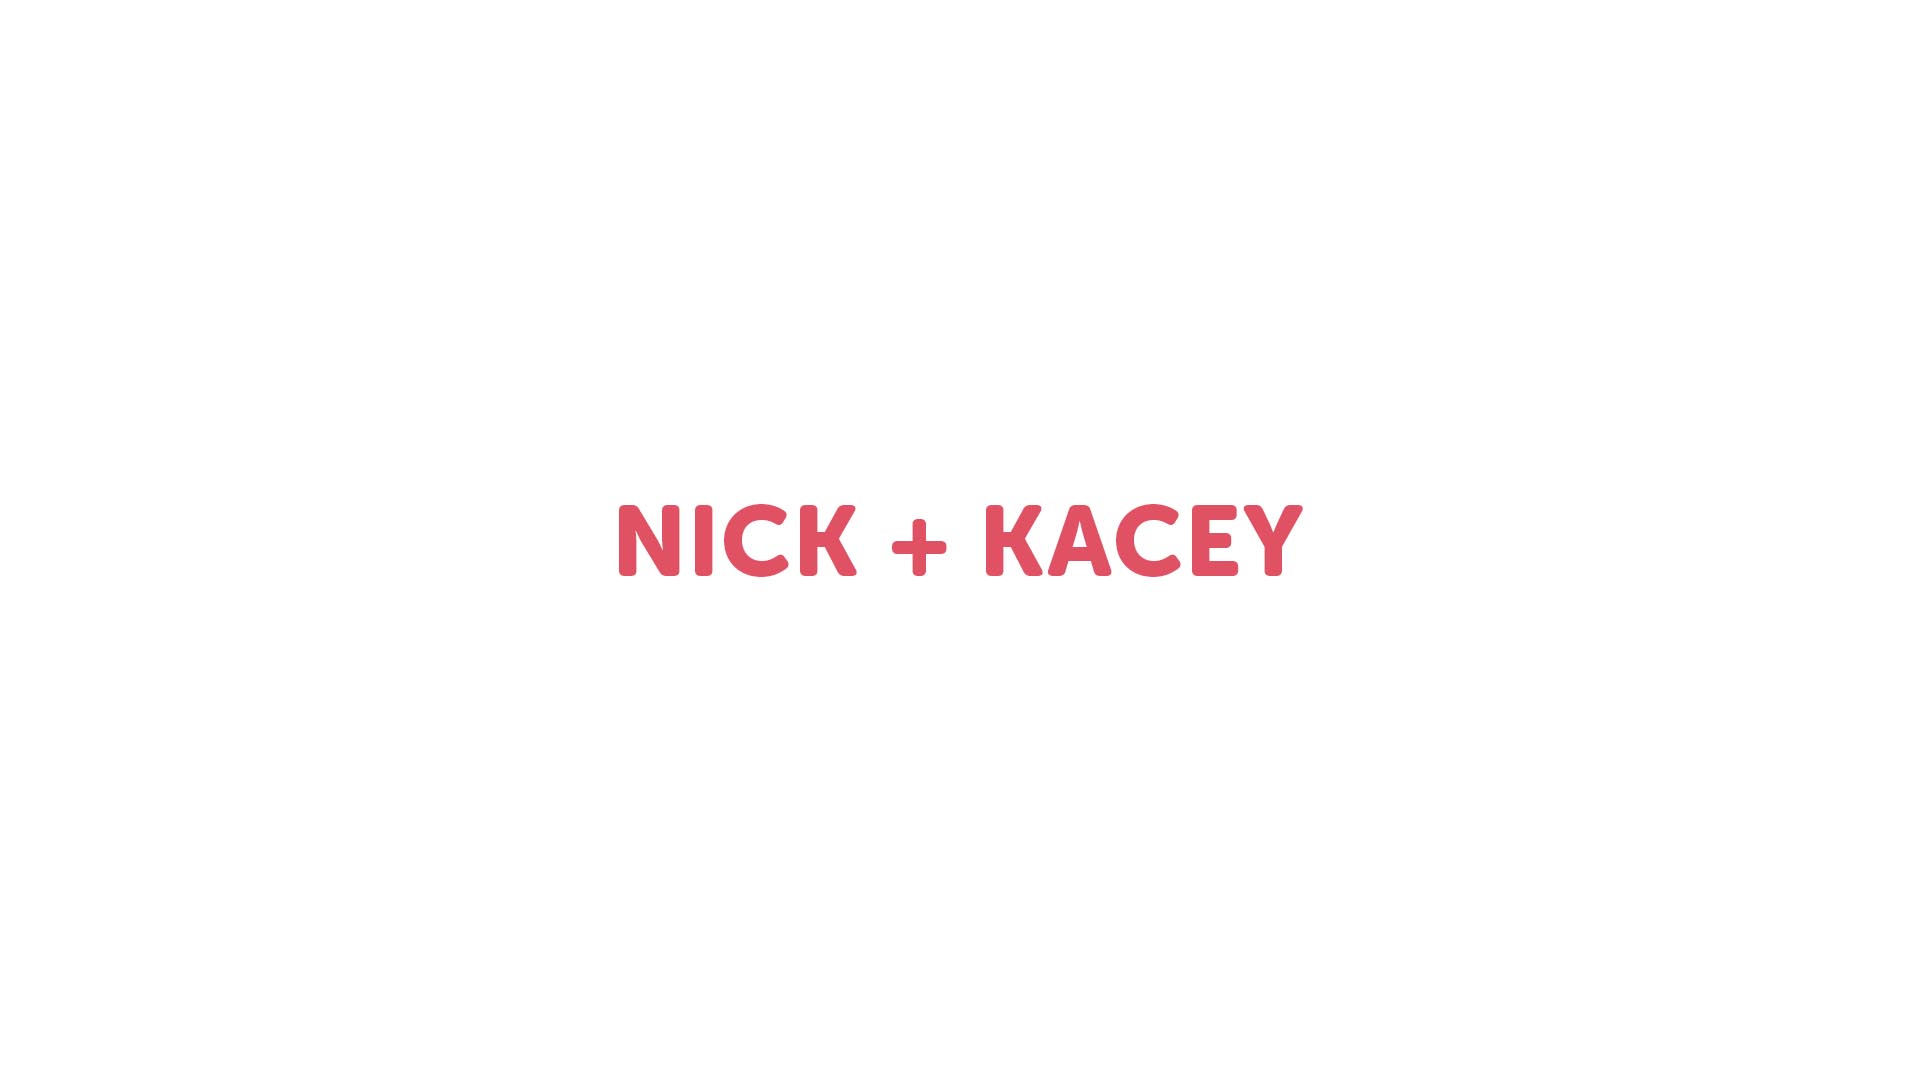 Nick + Kacey